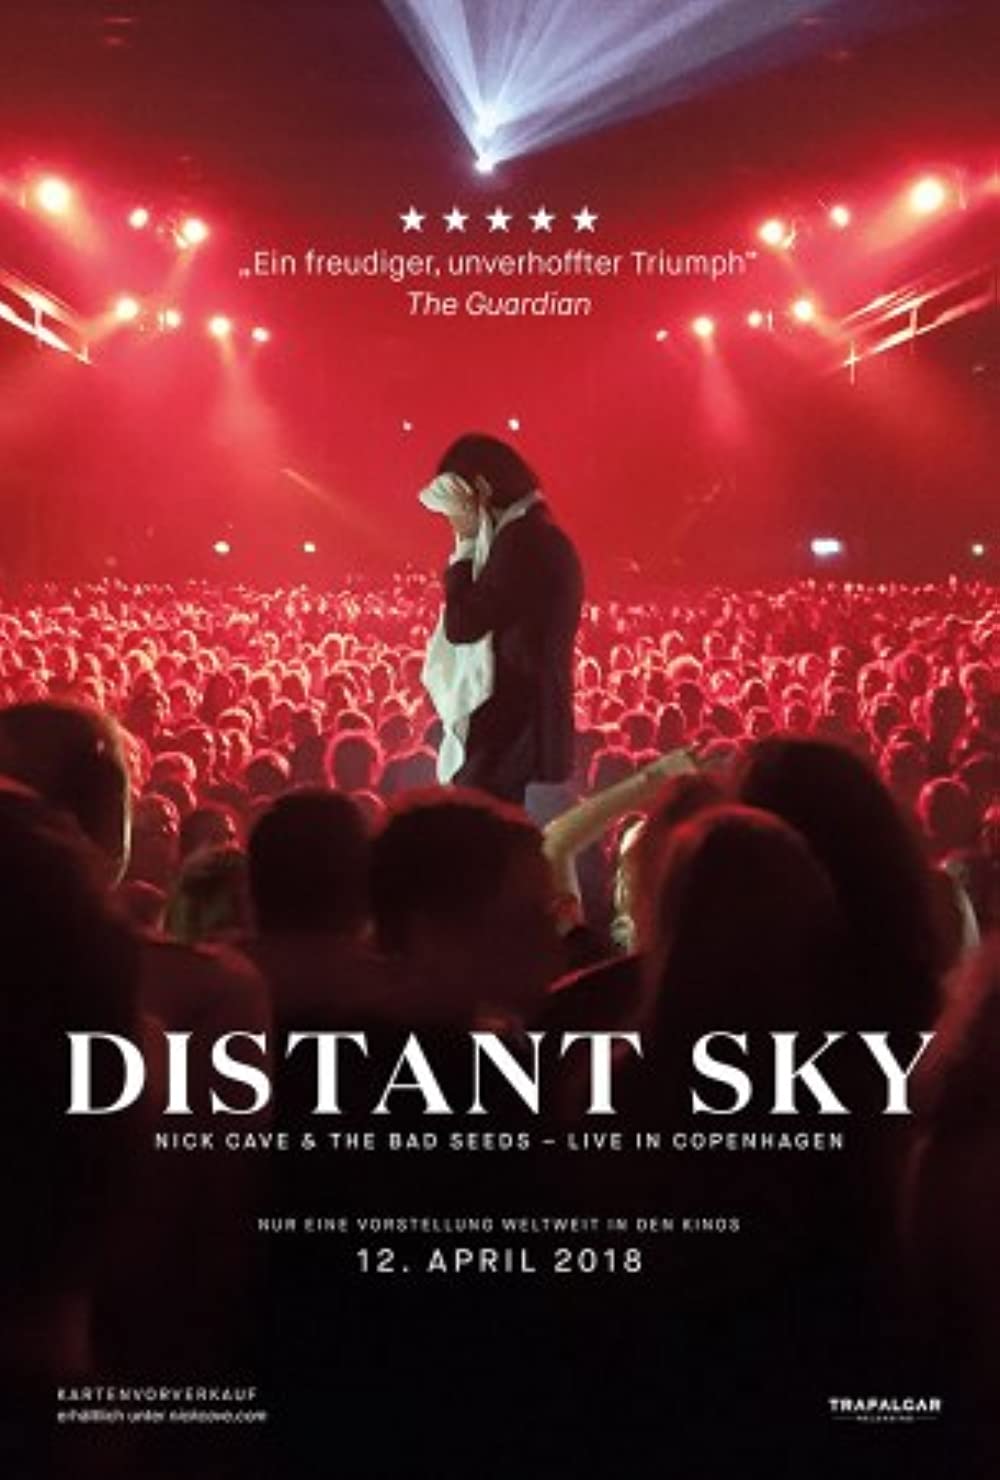 Filmbeschreibung zu Distant Sky - Nick Cave & The Bad Seeds Live in Copenhagen